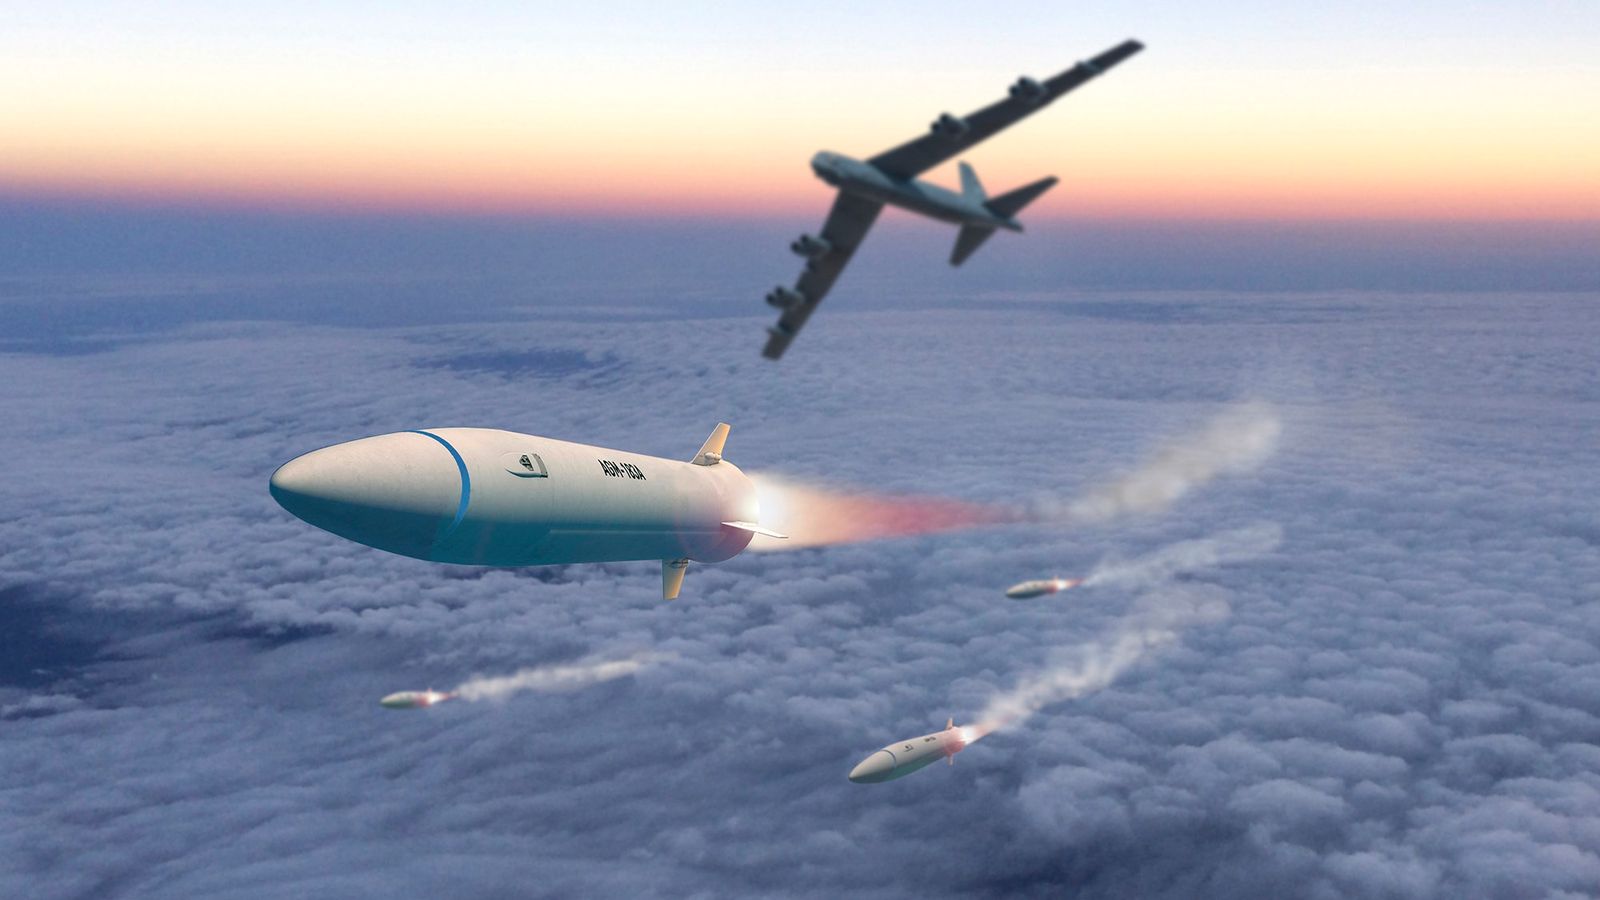 Le Royaume-Uni va développer des missiles hypersoniques pour rattraper la Chine et la Russie d’ici 2030 – rapport |  Nouvelles du Royaume-Uni